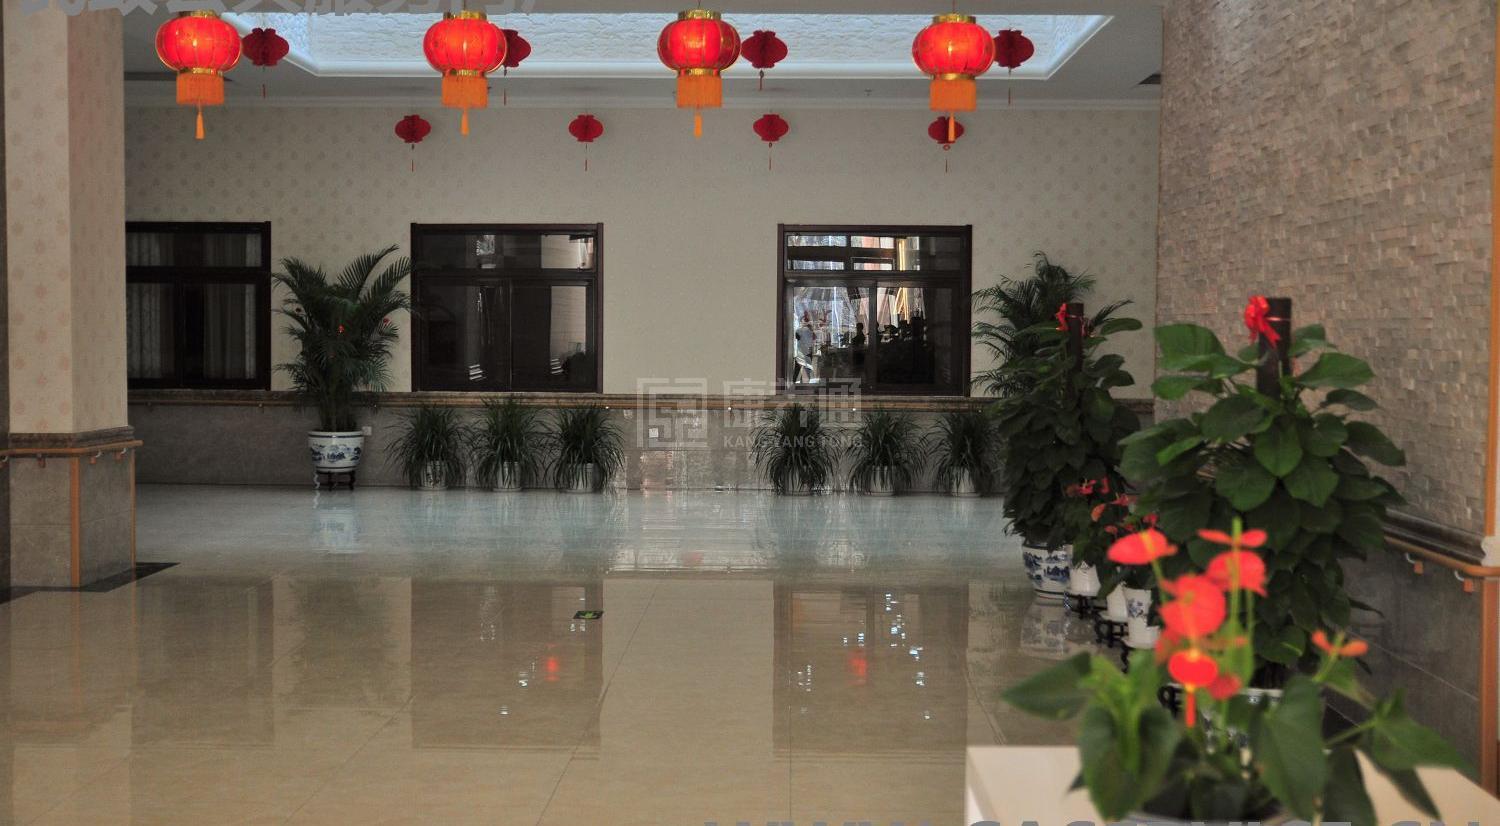 北京汇晨古塔老年公寓有限公司环境图-走廊